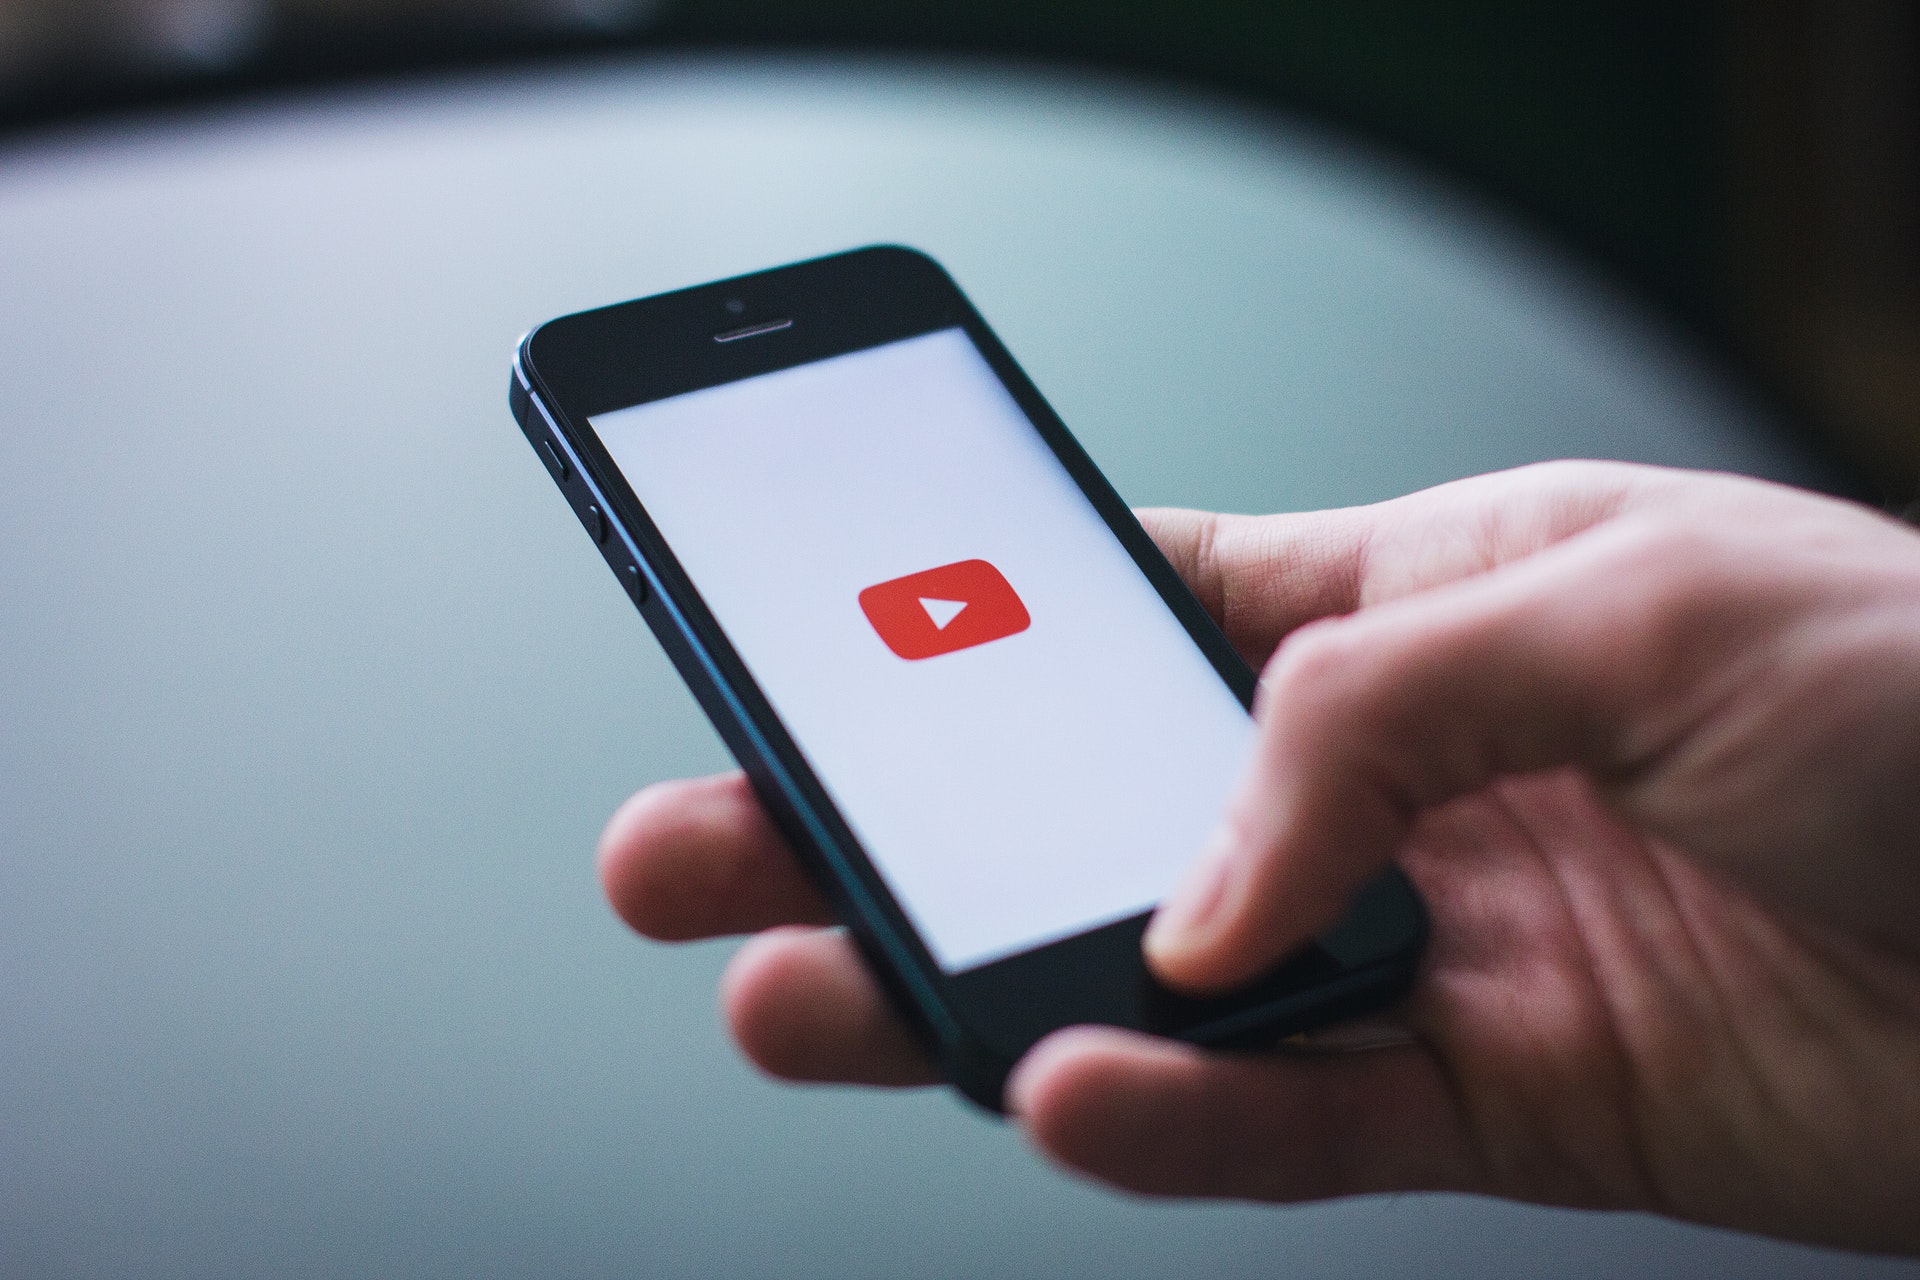 MOBILE ADVERTISING - YouTube dla reklamodawców - zarządzanie bezpieczeństwem i spójnością marki YT YouTube dla reklamodawcow zarzadzanie bezpieczenstwem i spojnoscia marki